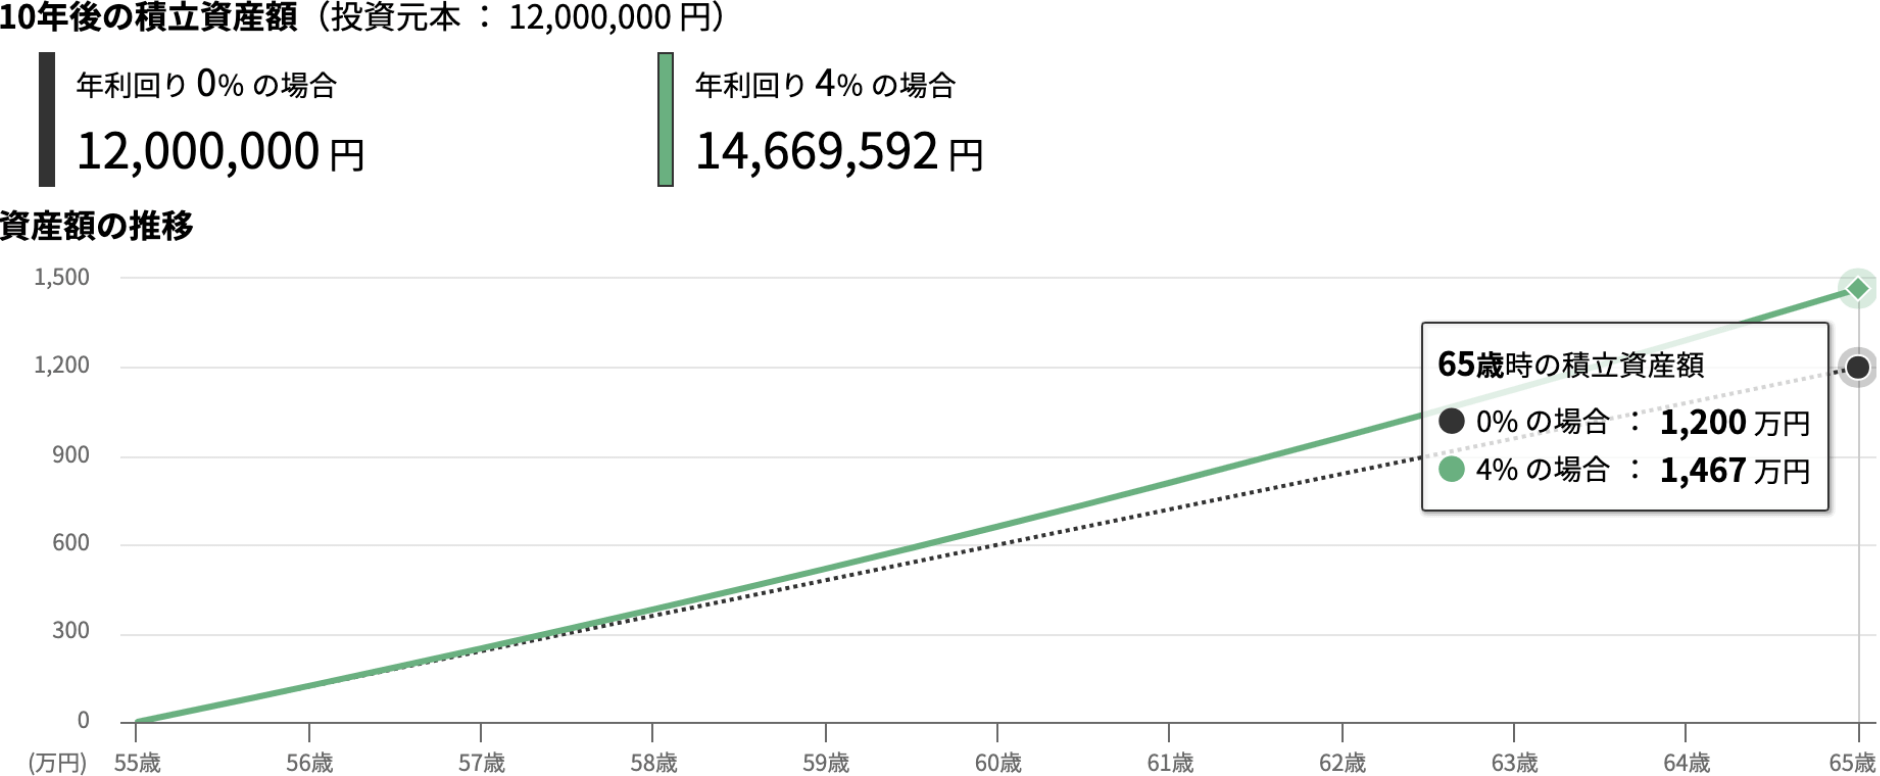 55歳から毎月10万円×10年間、利回り4％で積み立てた場合のシミュレーション